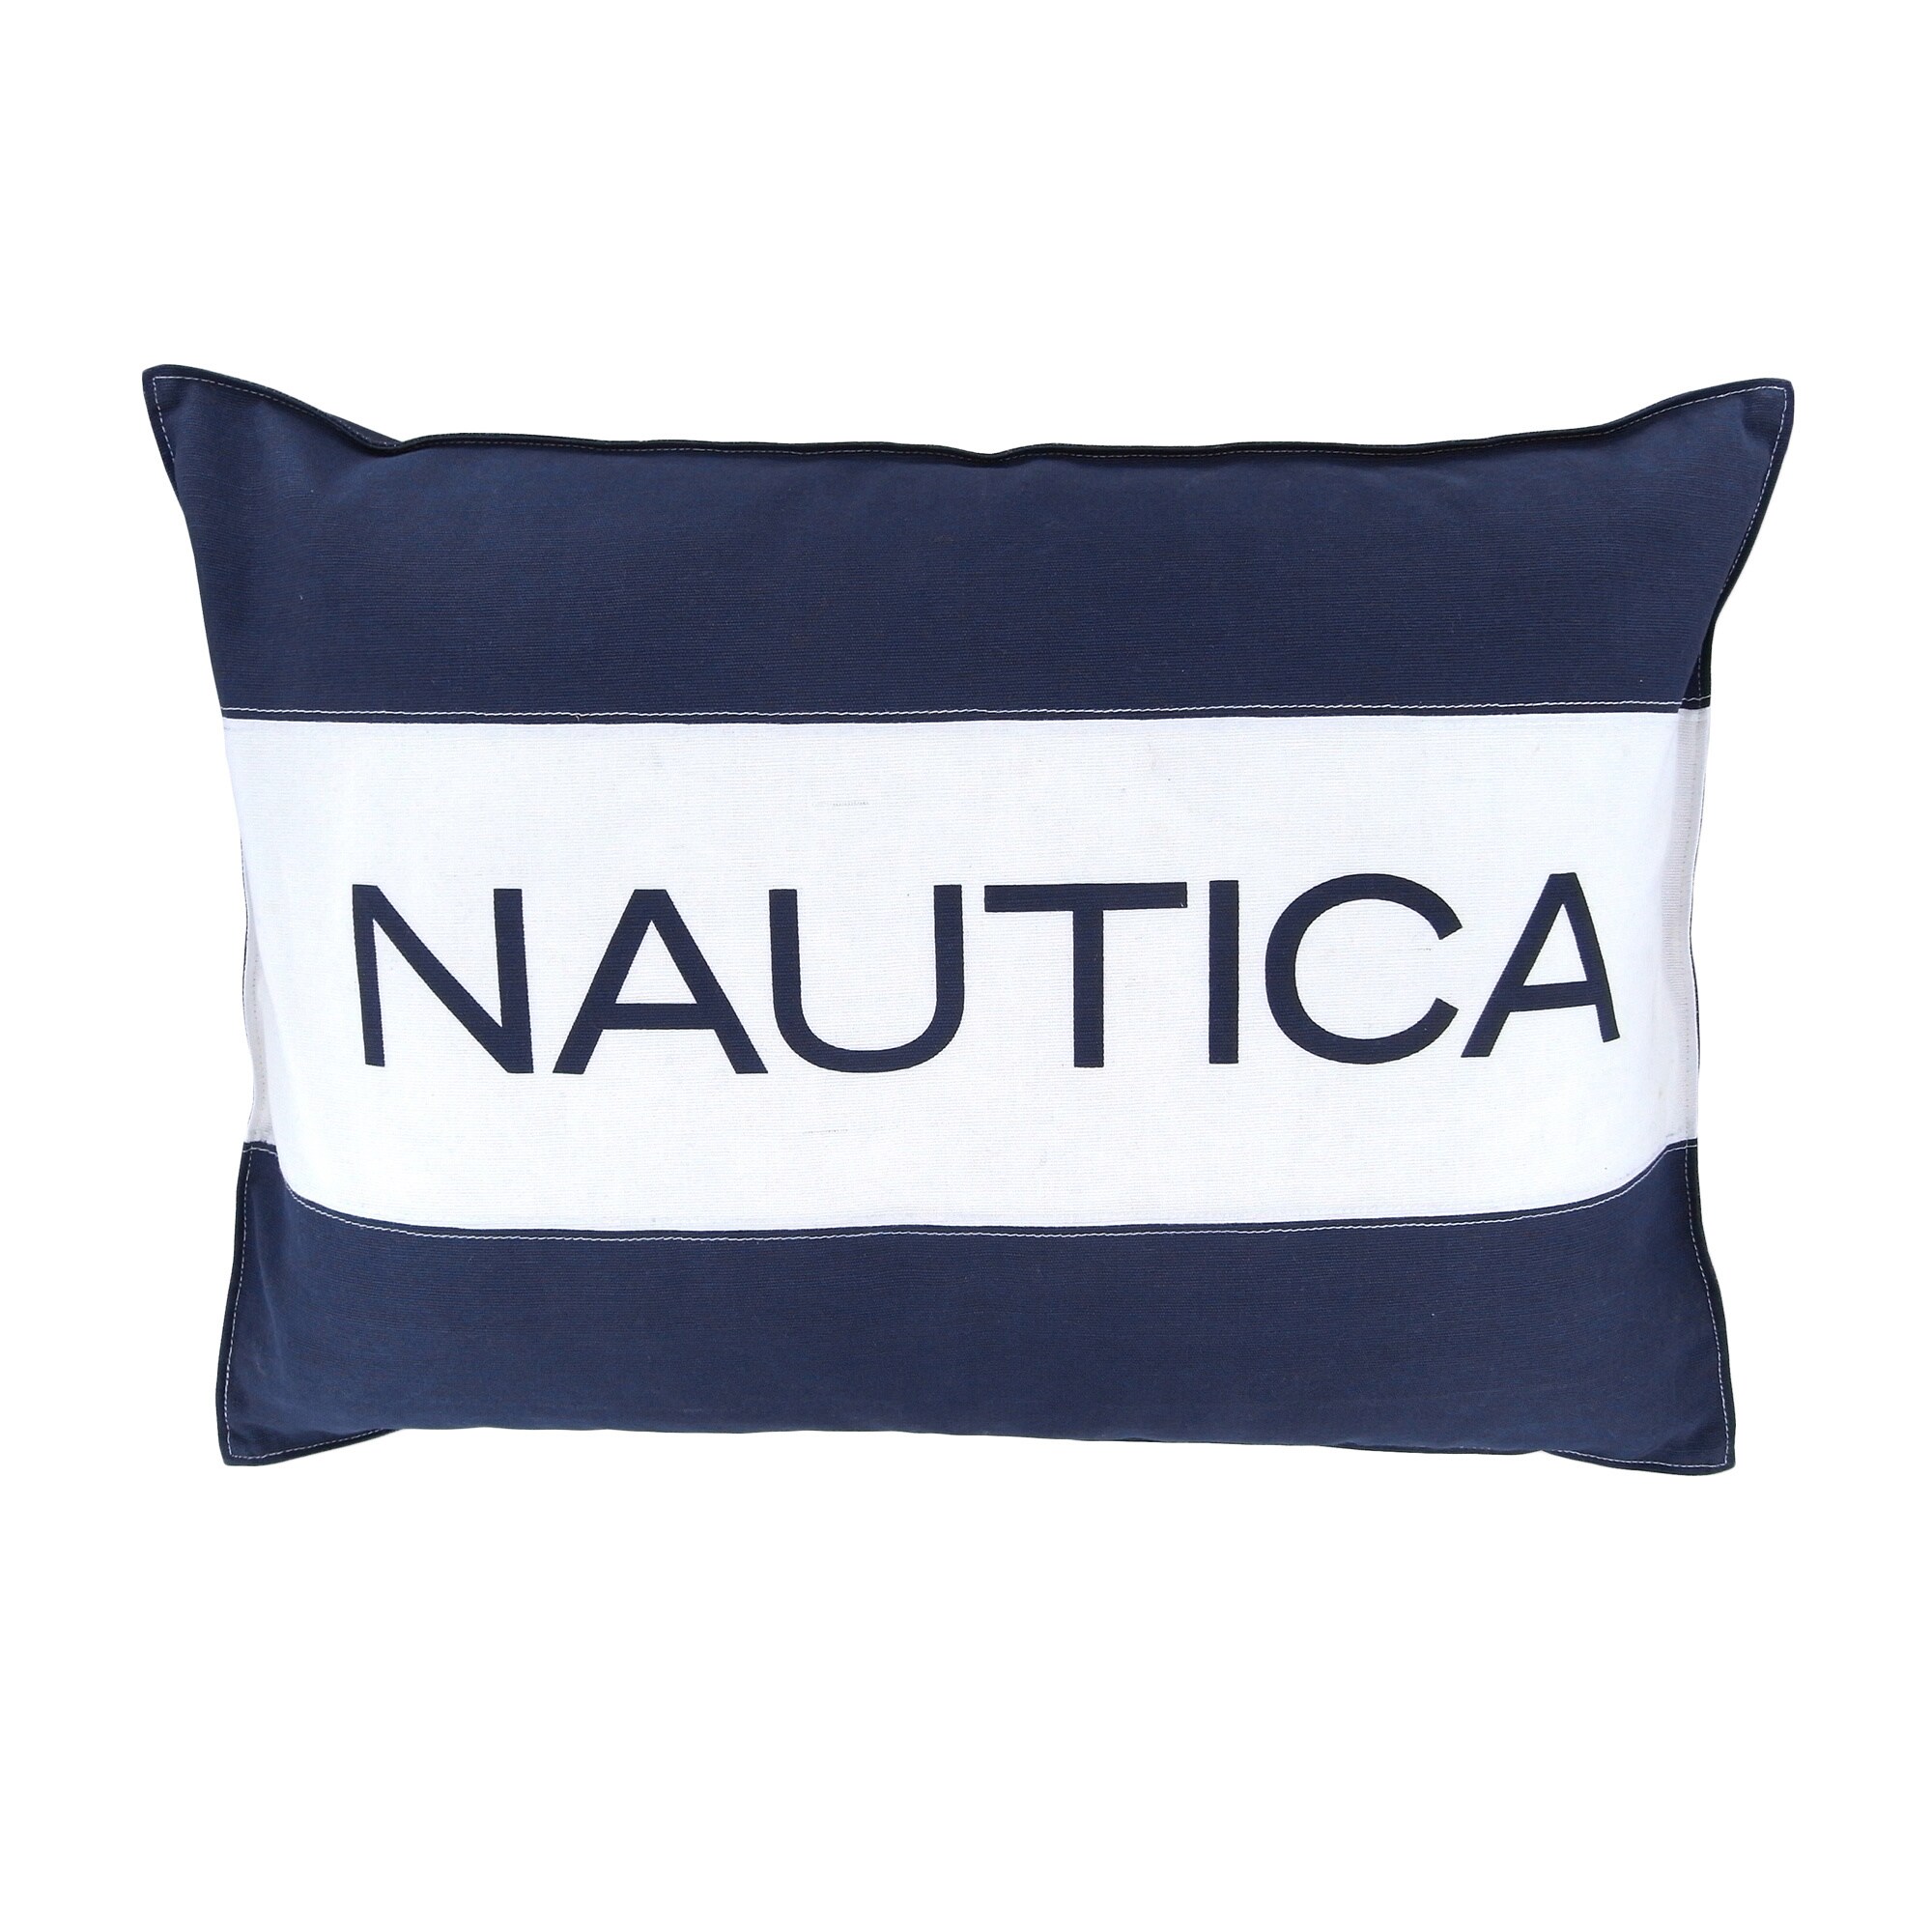 nautica bed pillows